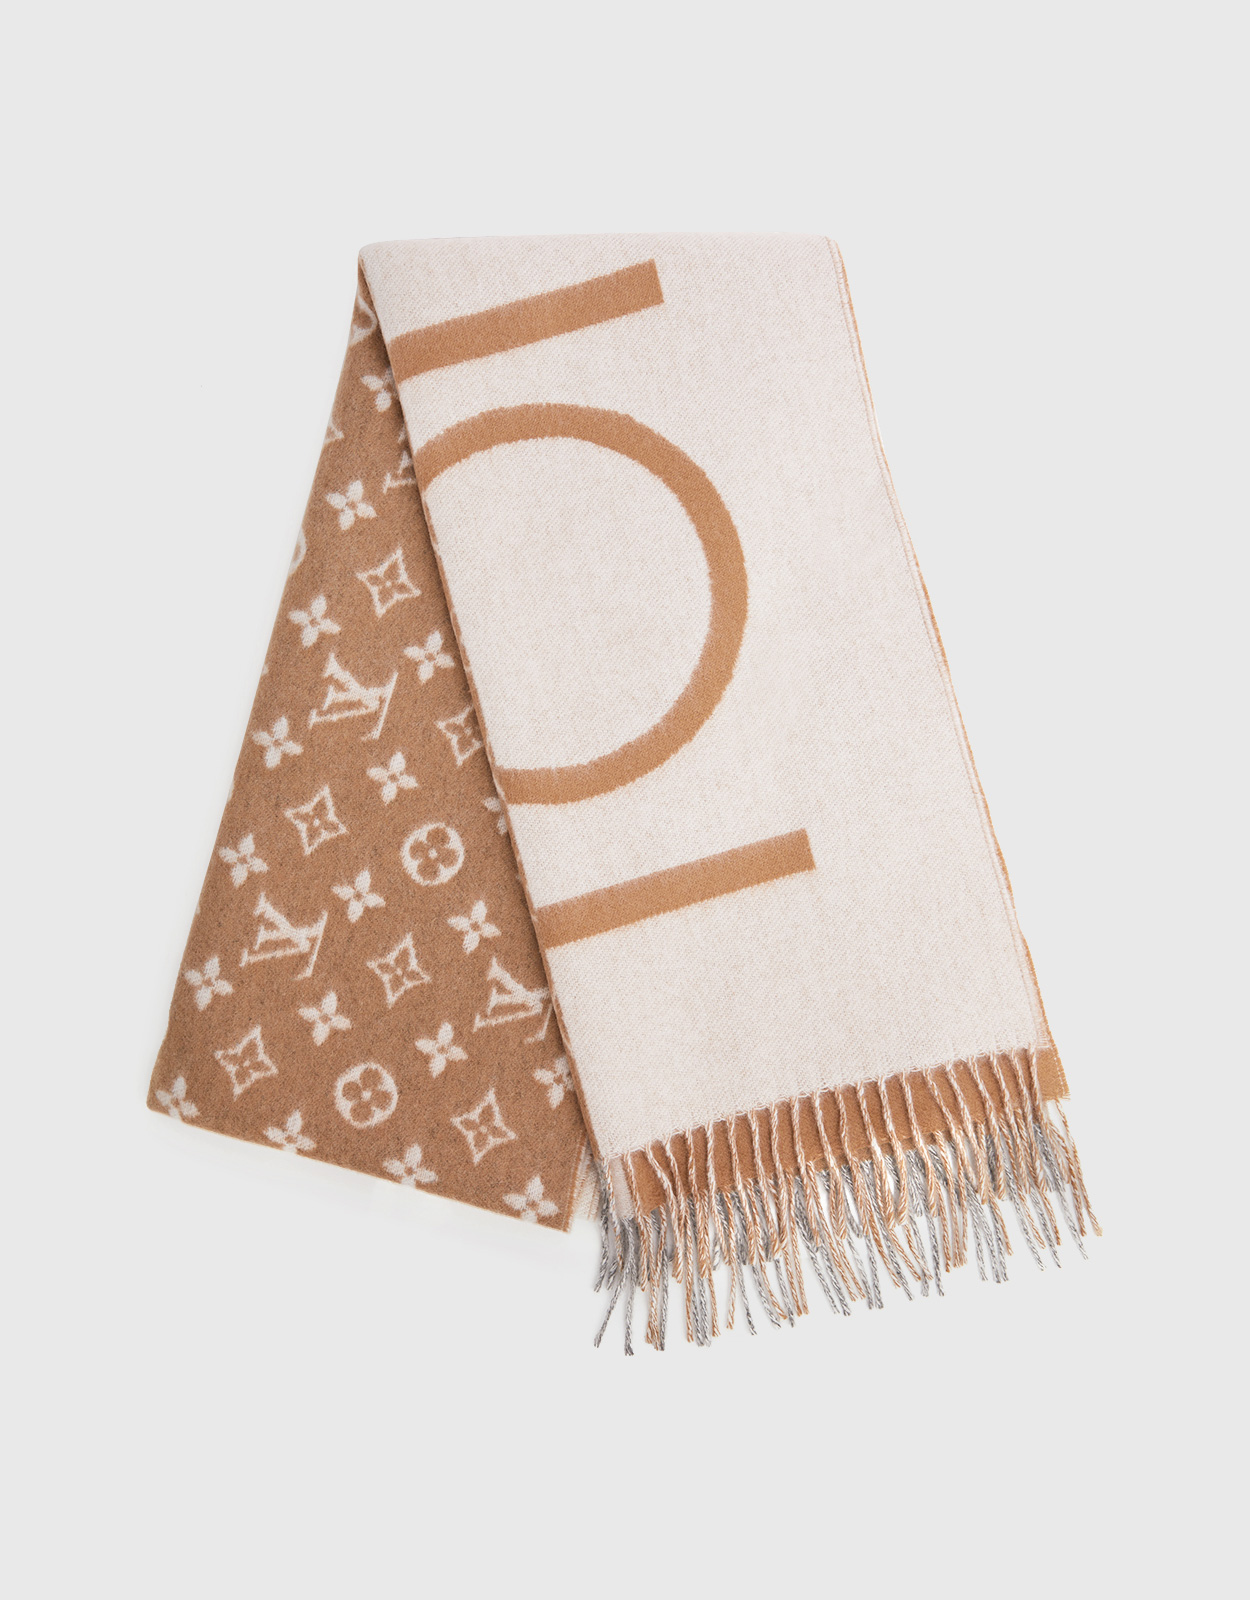 Louis Vuitton - Monogram Split Cashmere Scarf